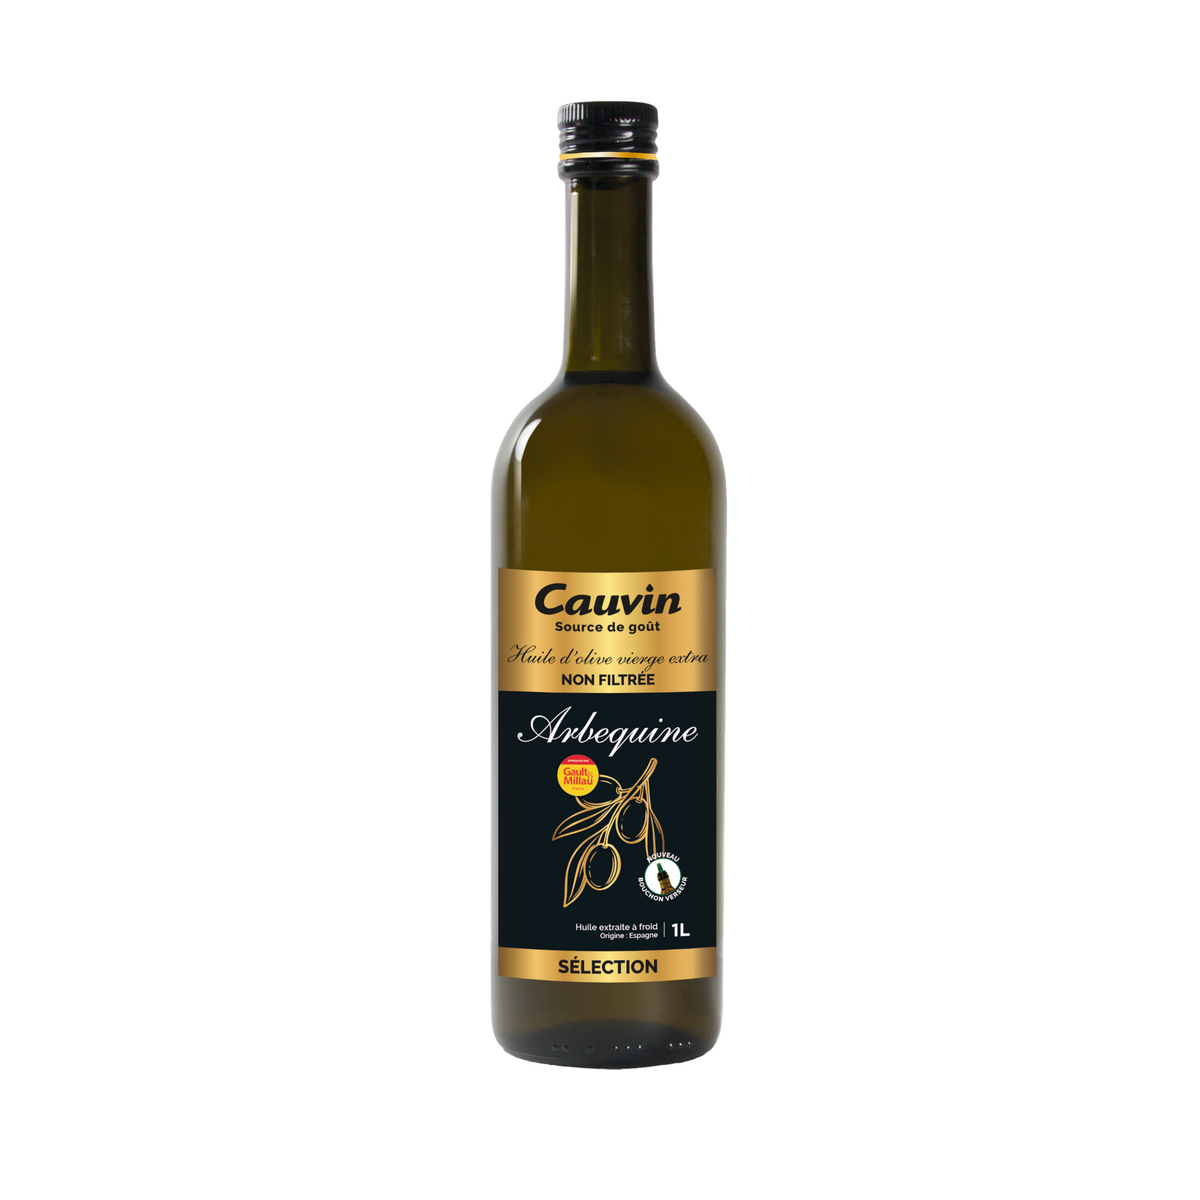 CAUVIN Huile d'olive vierge extra non filtrée sélection 1l